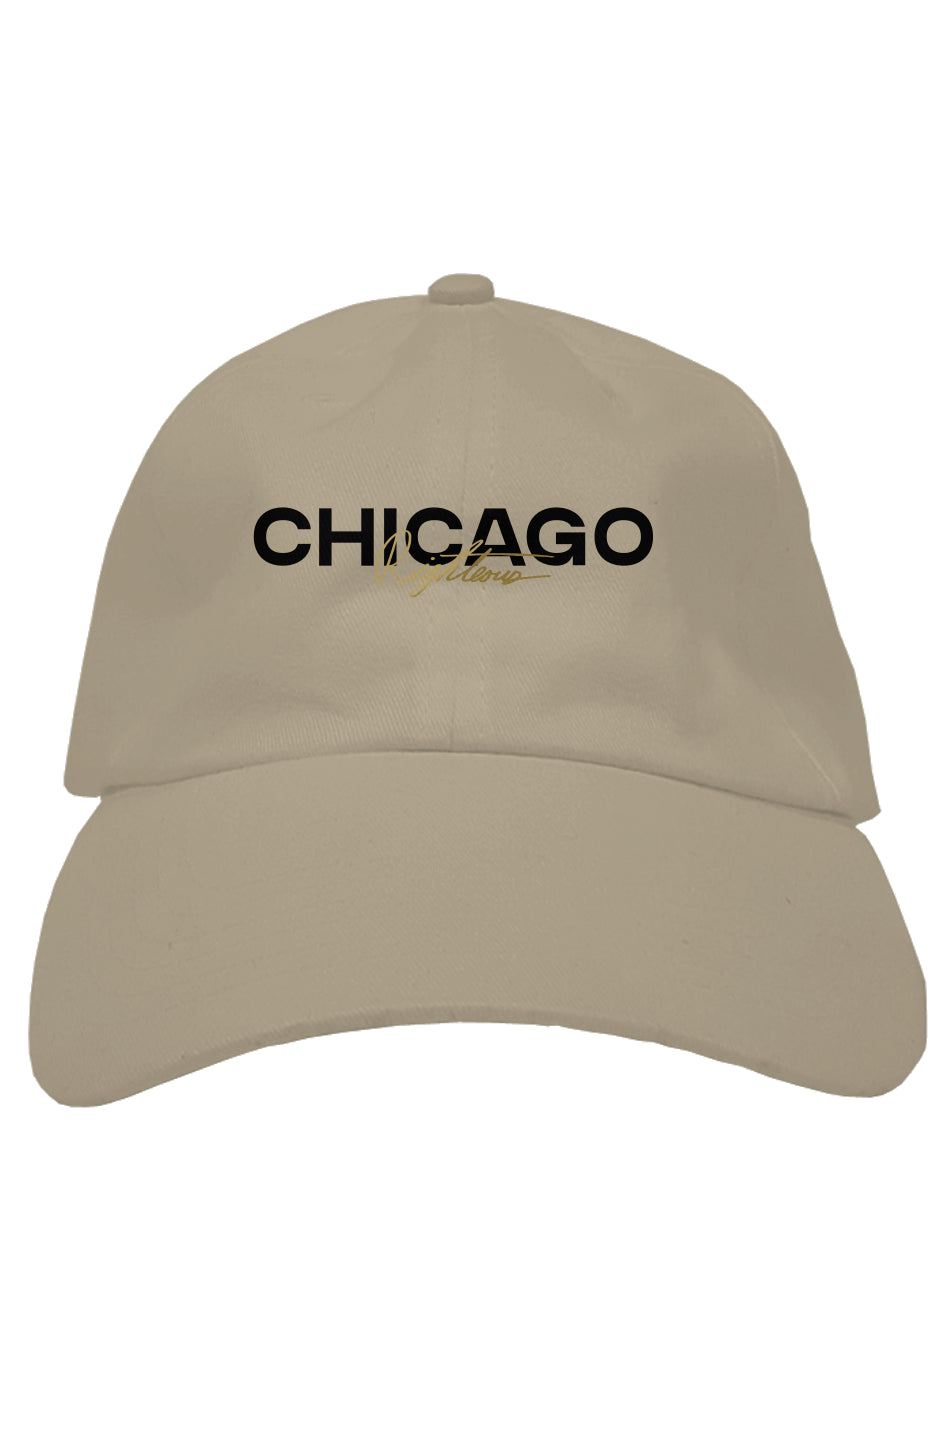 RIGHTEOUS HT CHICAGO PREMIUM ADJUSTABLE DAD HAT